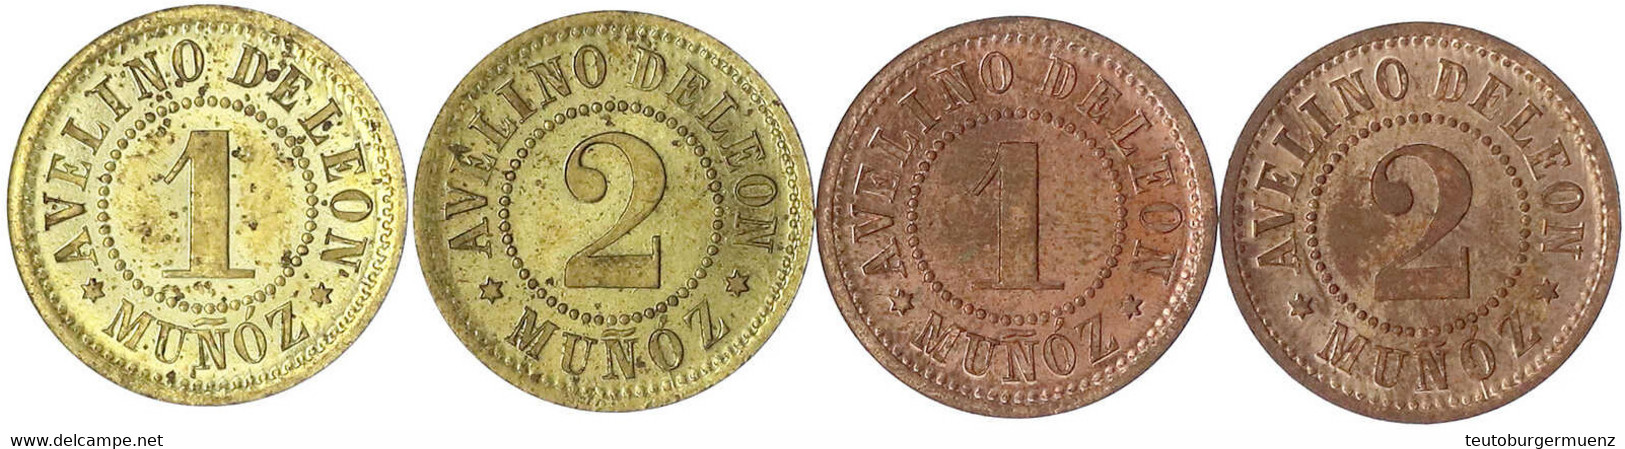 4 Hacienda-Marken: 1 Und 2 Centavos Messing Und Kupfer O.J.(um 1900). Avellino De Leon Munoz. Prägefrisch - Guatemala